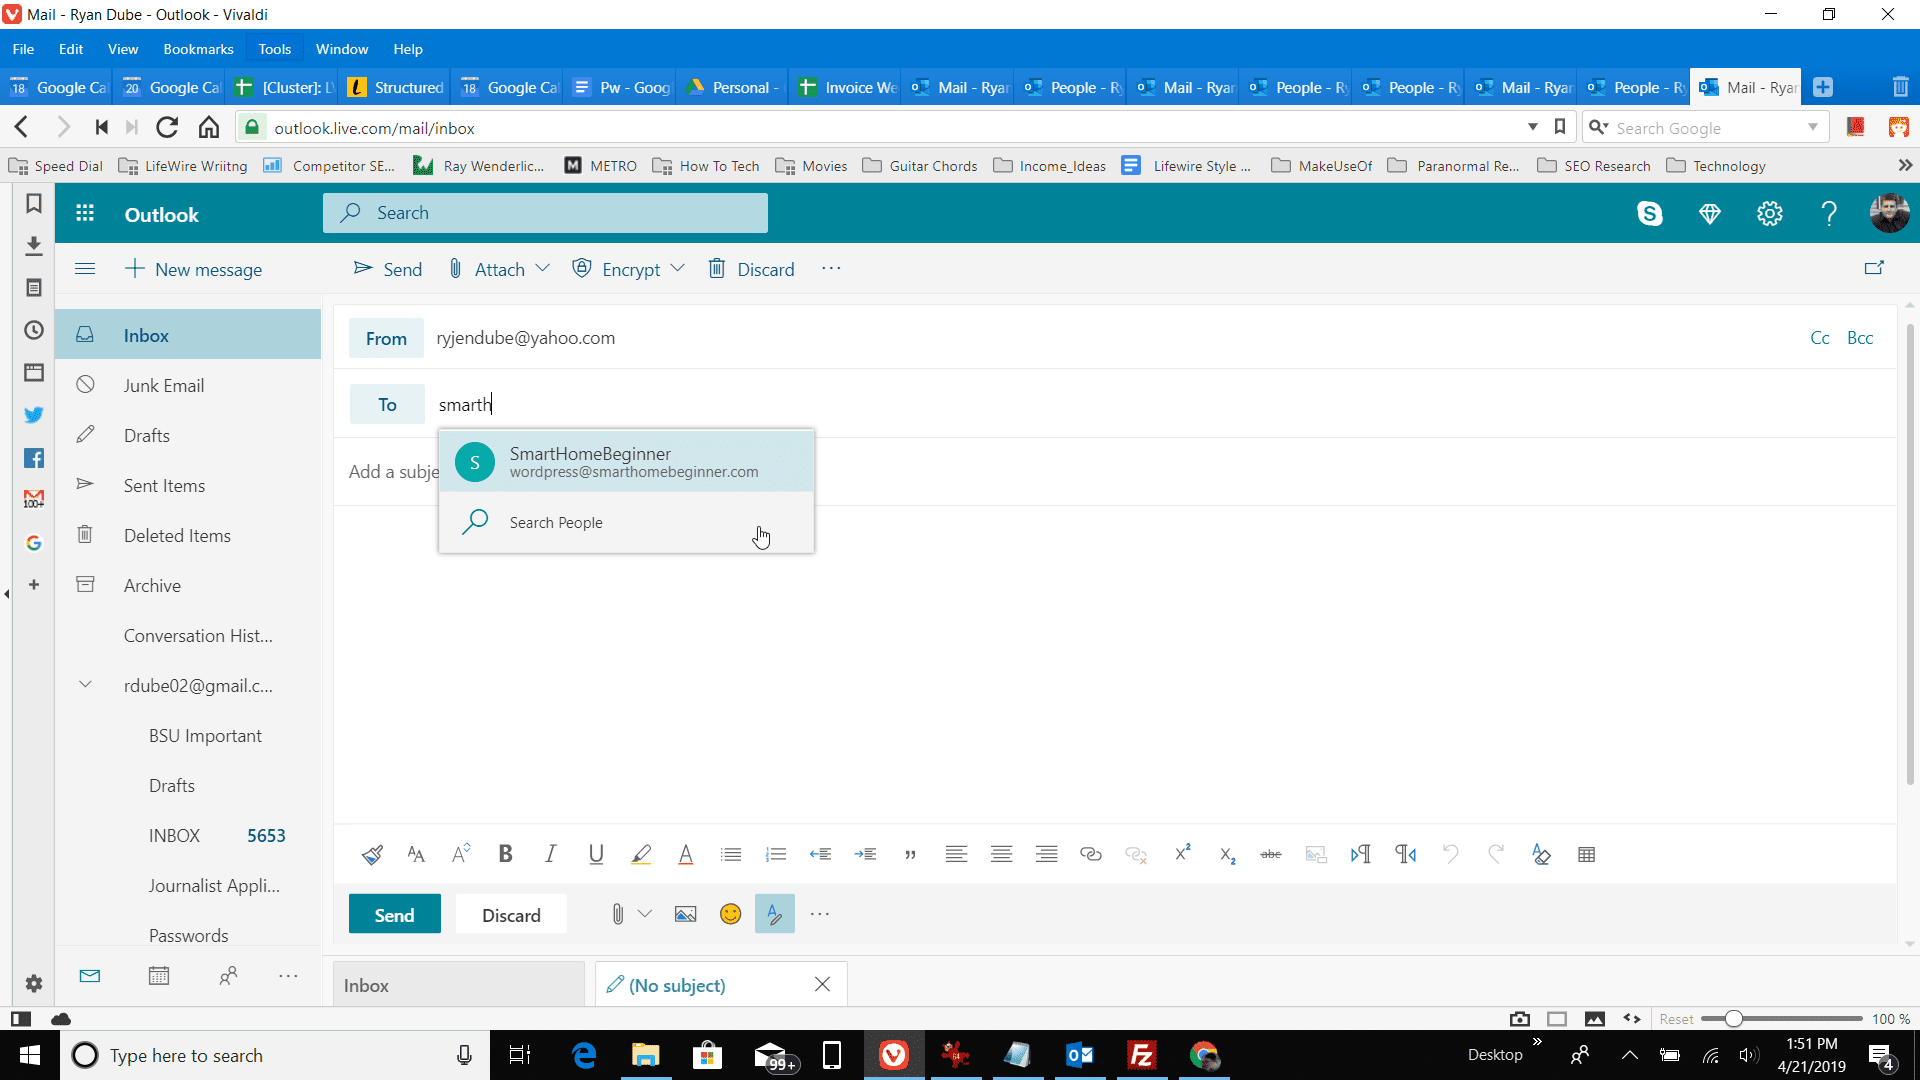 Captura de tela do uso do campo Para no Outlook.com para localizar contatos